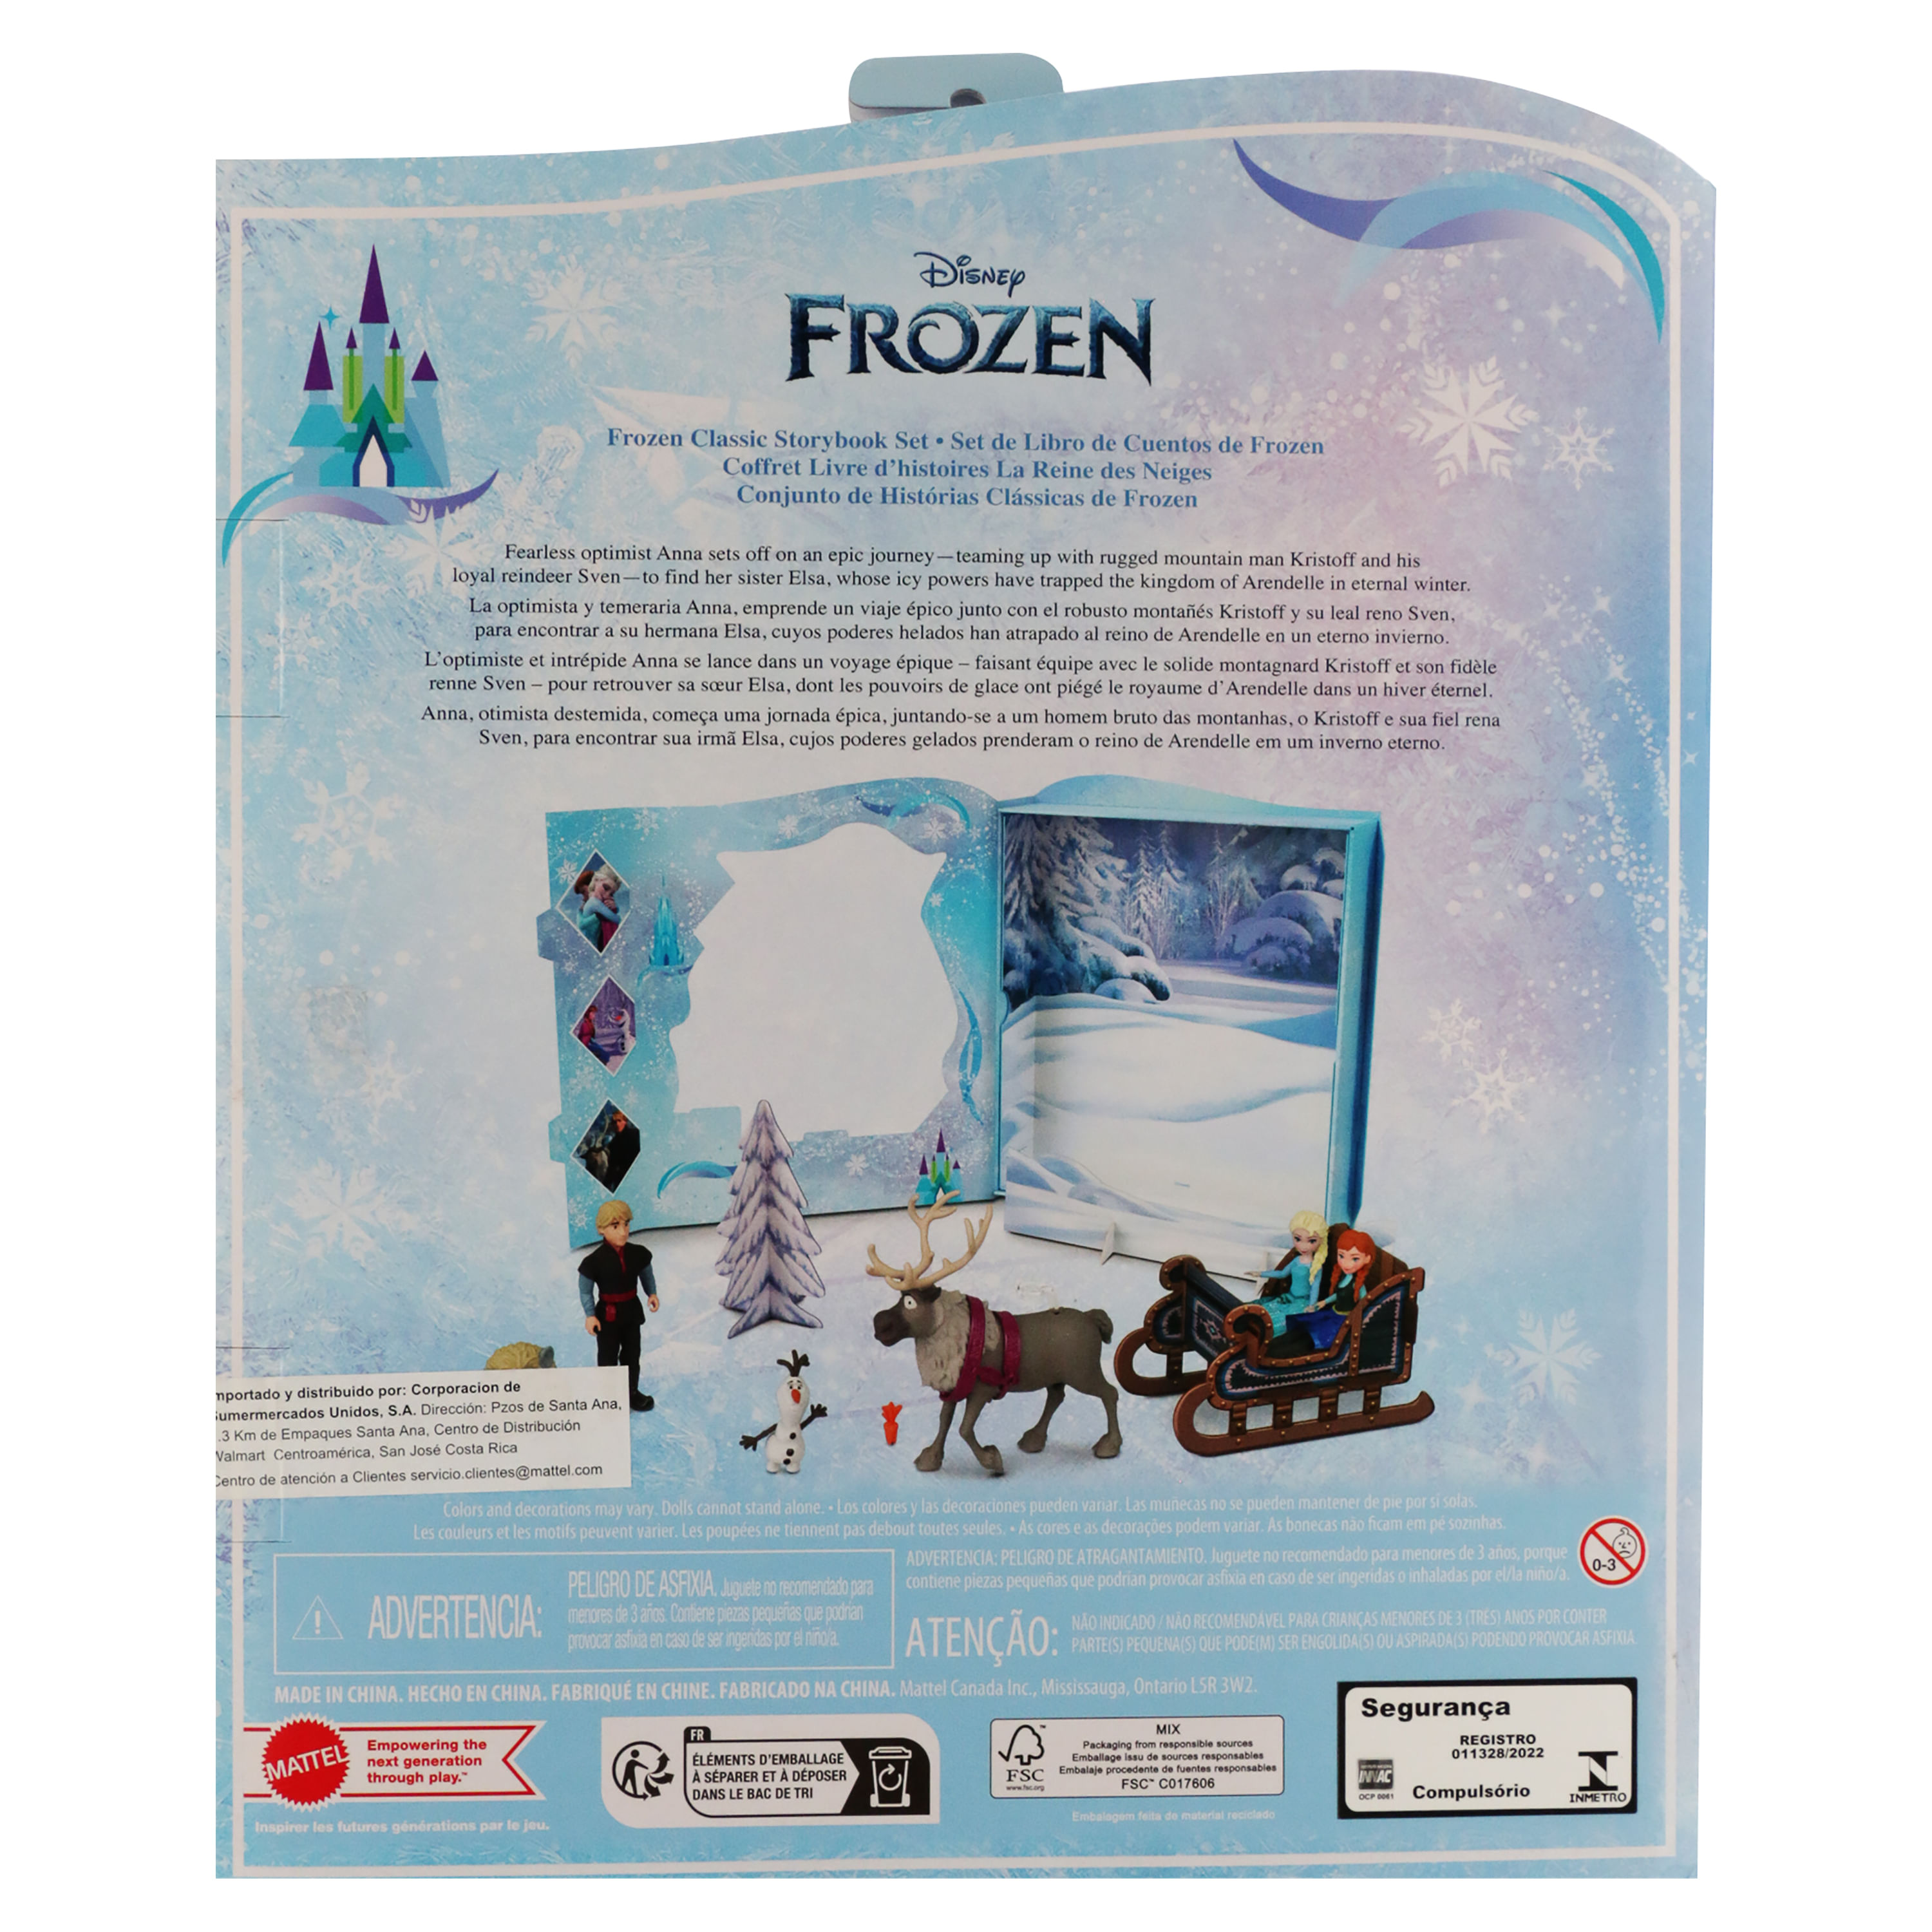 Disney Frozen Boneca Set de Histórias 6 Figuras